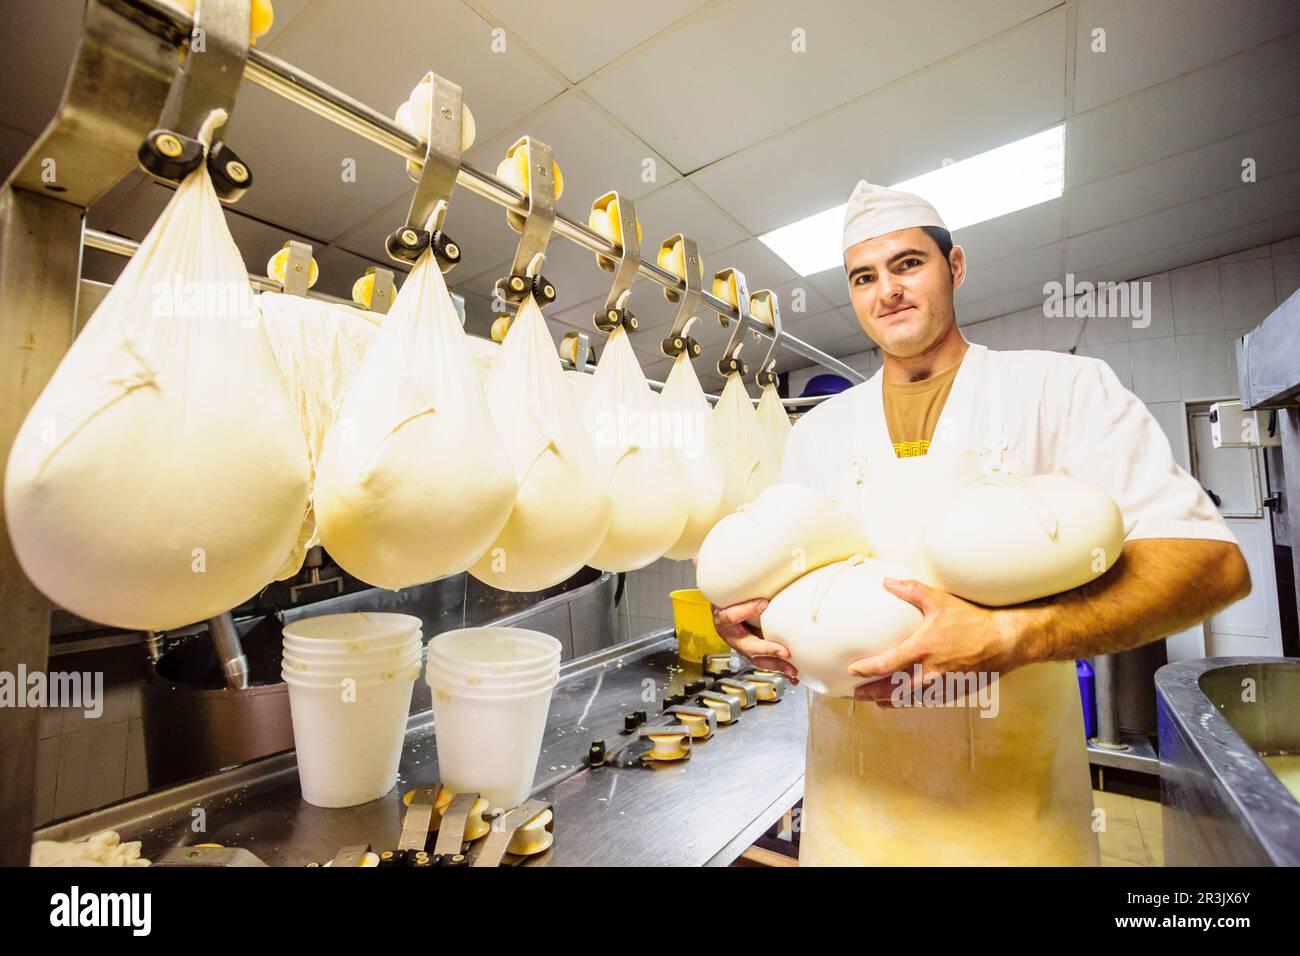 fabricacion artesanal de queso Binigarba - denominacion de origen Mahon artesano- finca Binigarba, Ciutadella, Menorca, Islas Baleares, españa, europa. Stock Photo